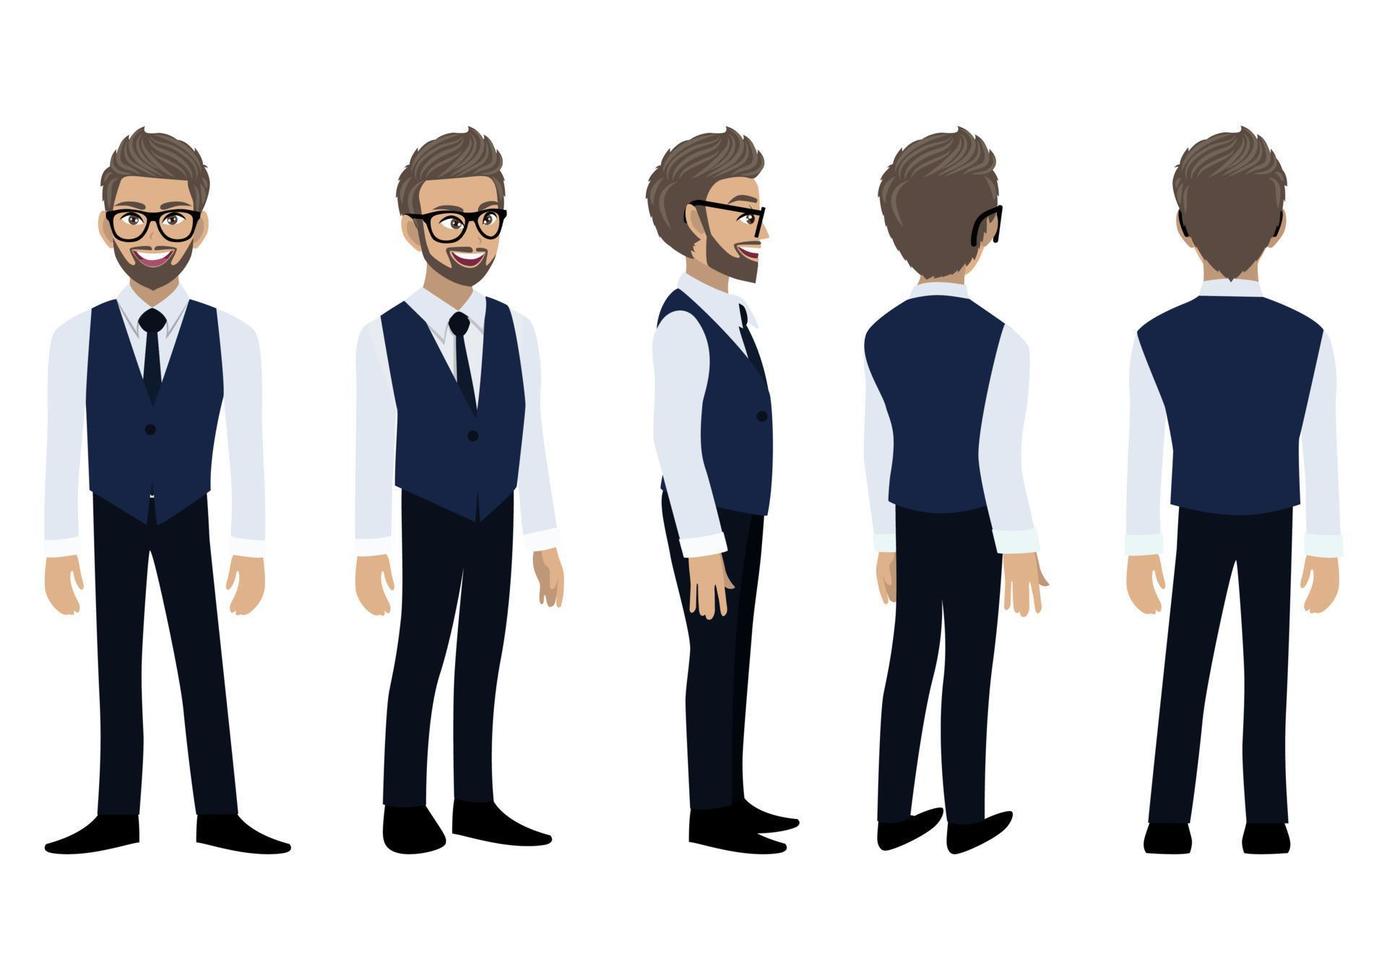 personnage de dessin animé d'homme d'affaires avec une chemise intelligente et un gilet pour l'animation. avant, côté, arrière, 3-4 caractères de vue. vecteur de conception icône plate